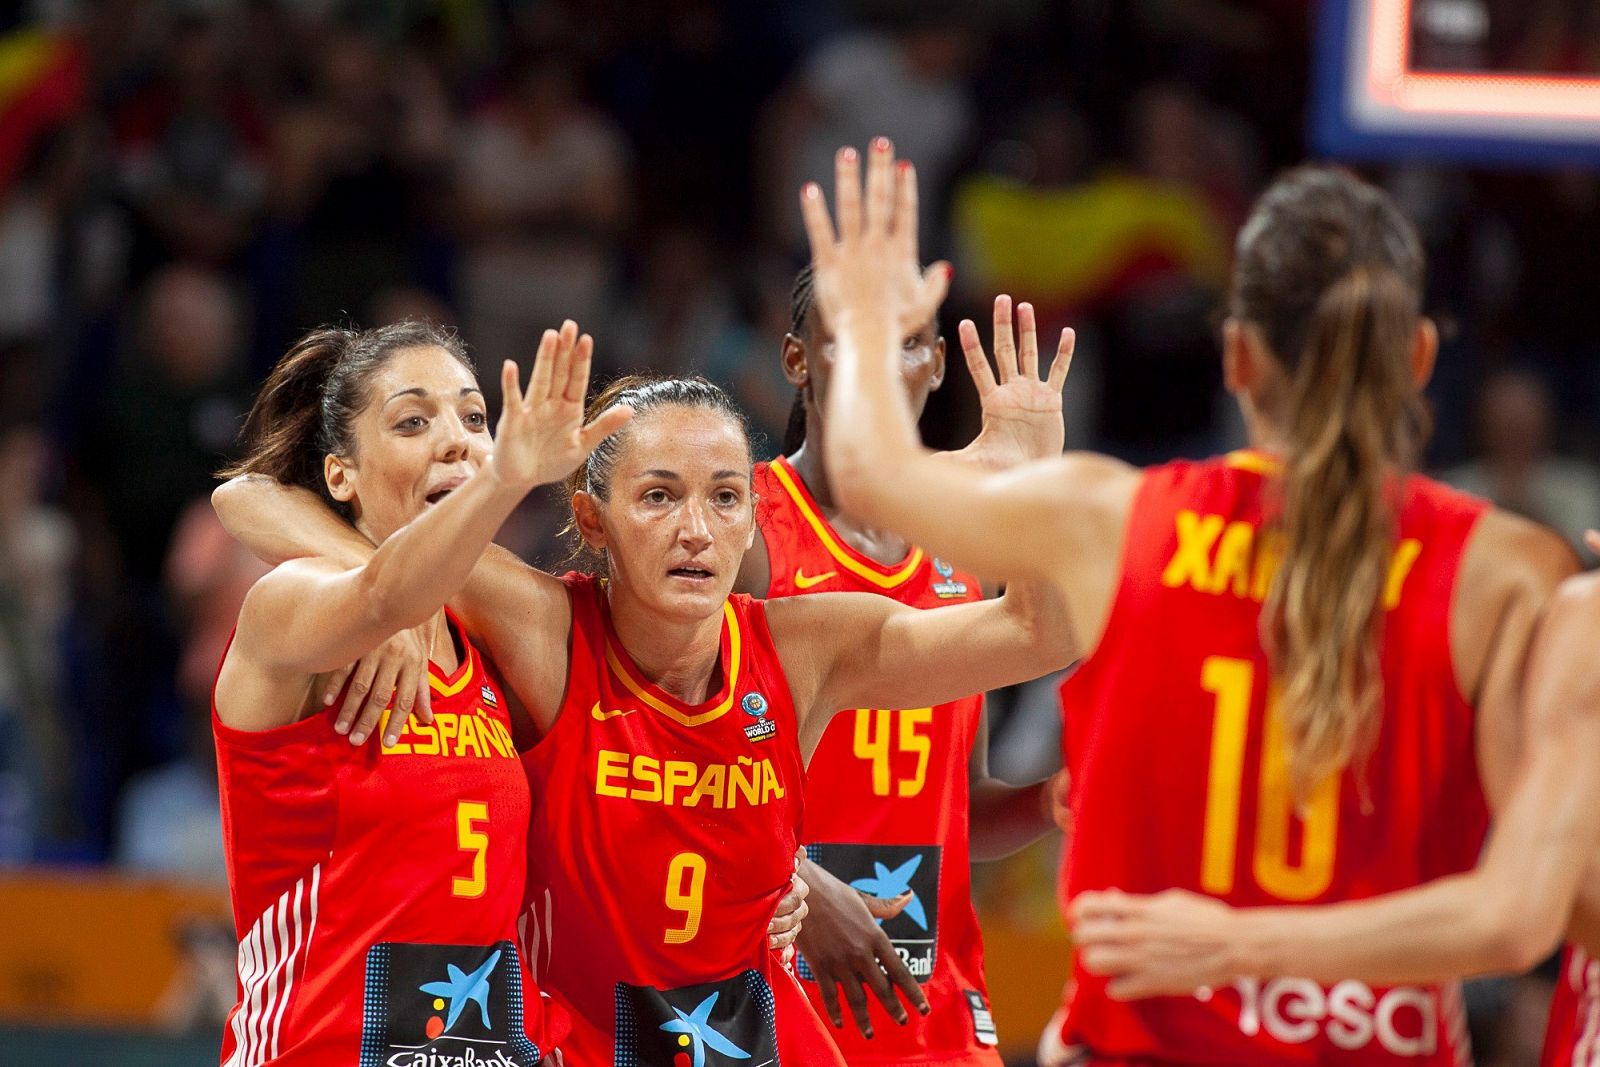 Las jugadoras de la selección española Cristina Ouviña (i) y Laia Palau (c) celebran una victoria